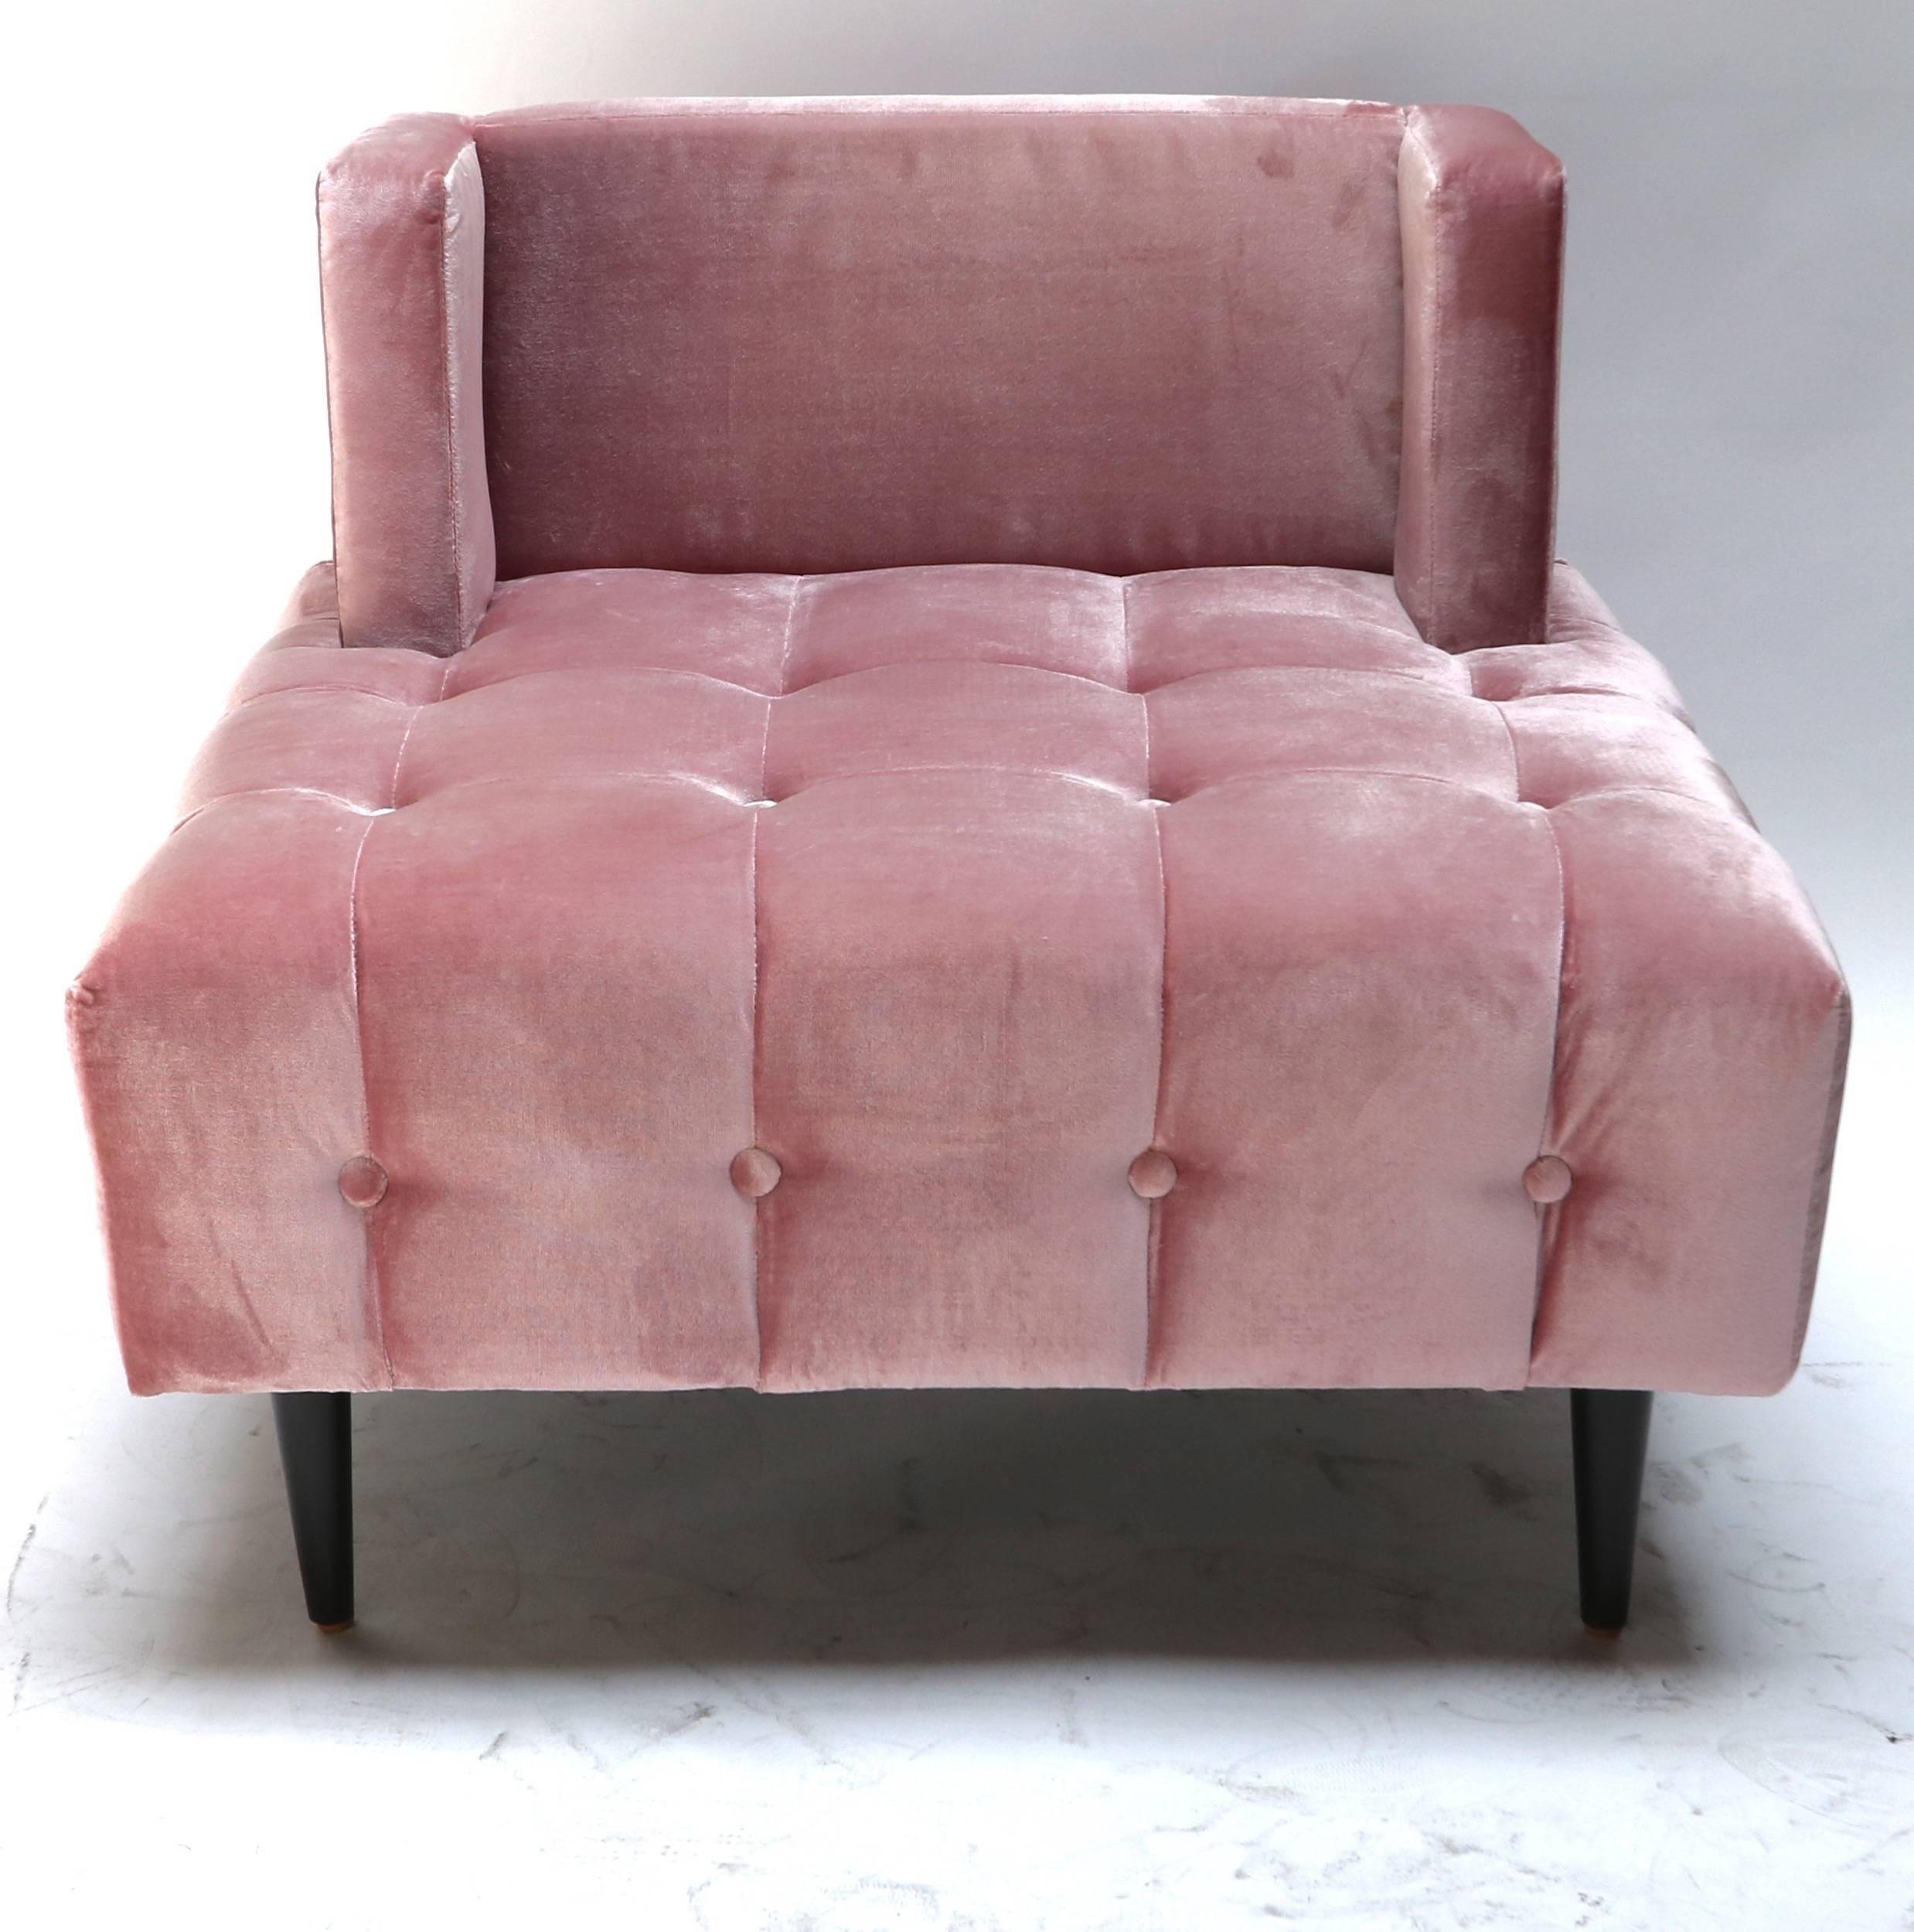 Ein Paar getuftete Loungesessel mit rosa Seidensamtbezug und Holzbeinen. Hergestellt in Los Angeles von Adesso Imports.

Kann in verschiedenen Farben und Stoffen ausgeführt werden.

Verkaufspreis nur für Bodenmodell